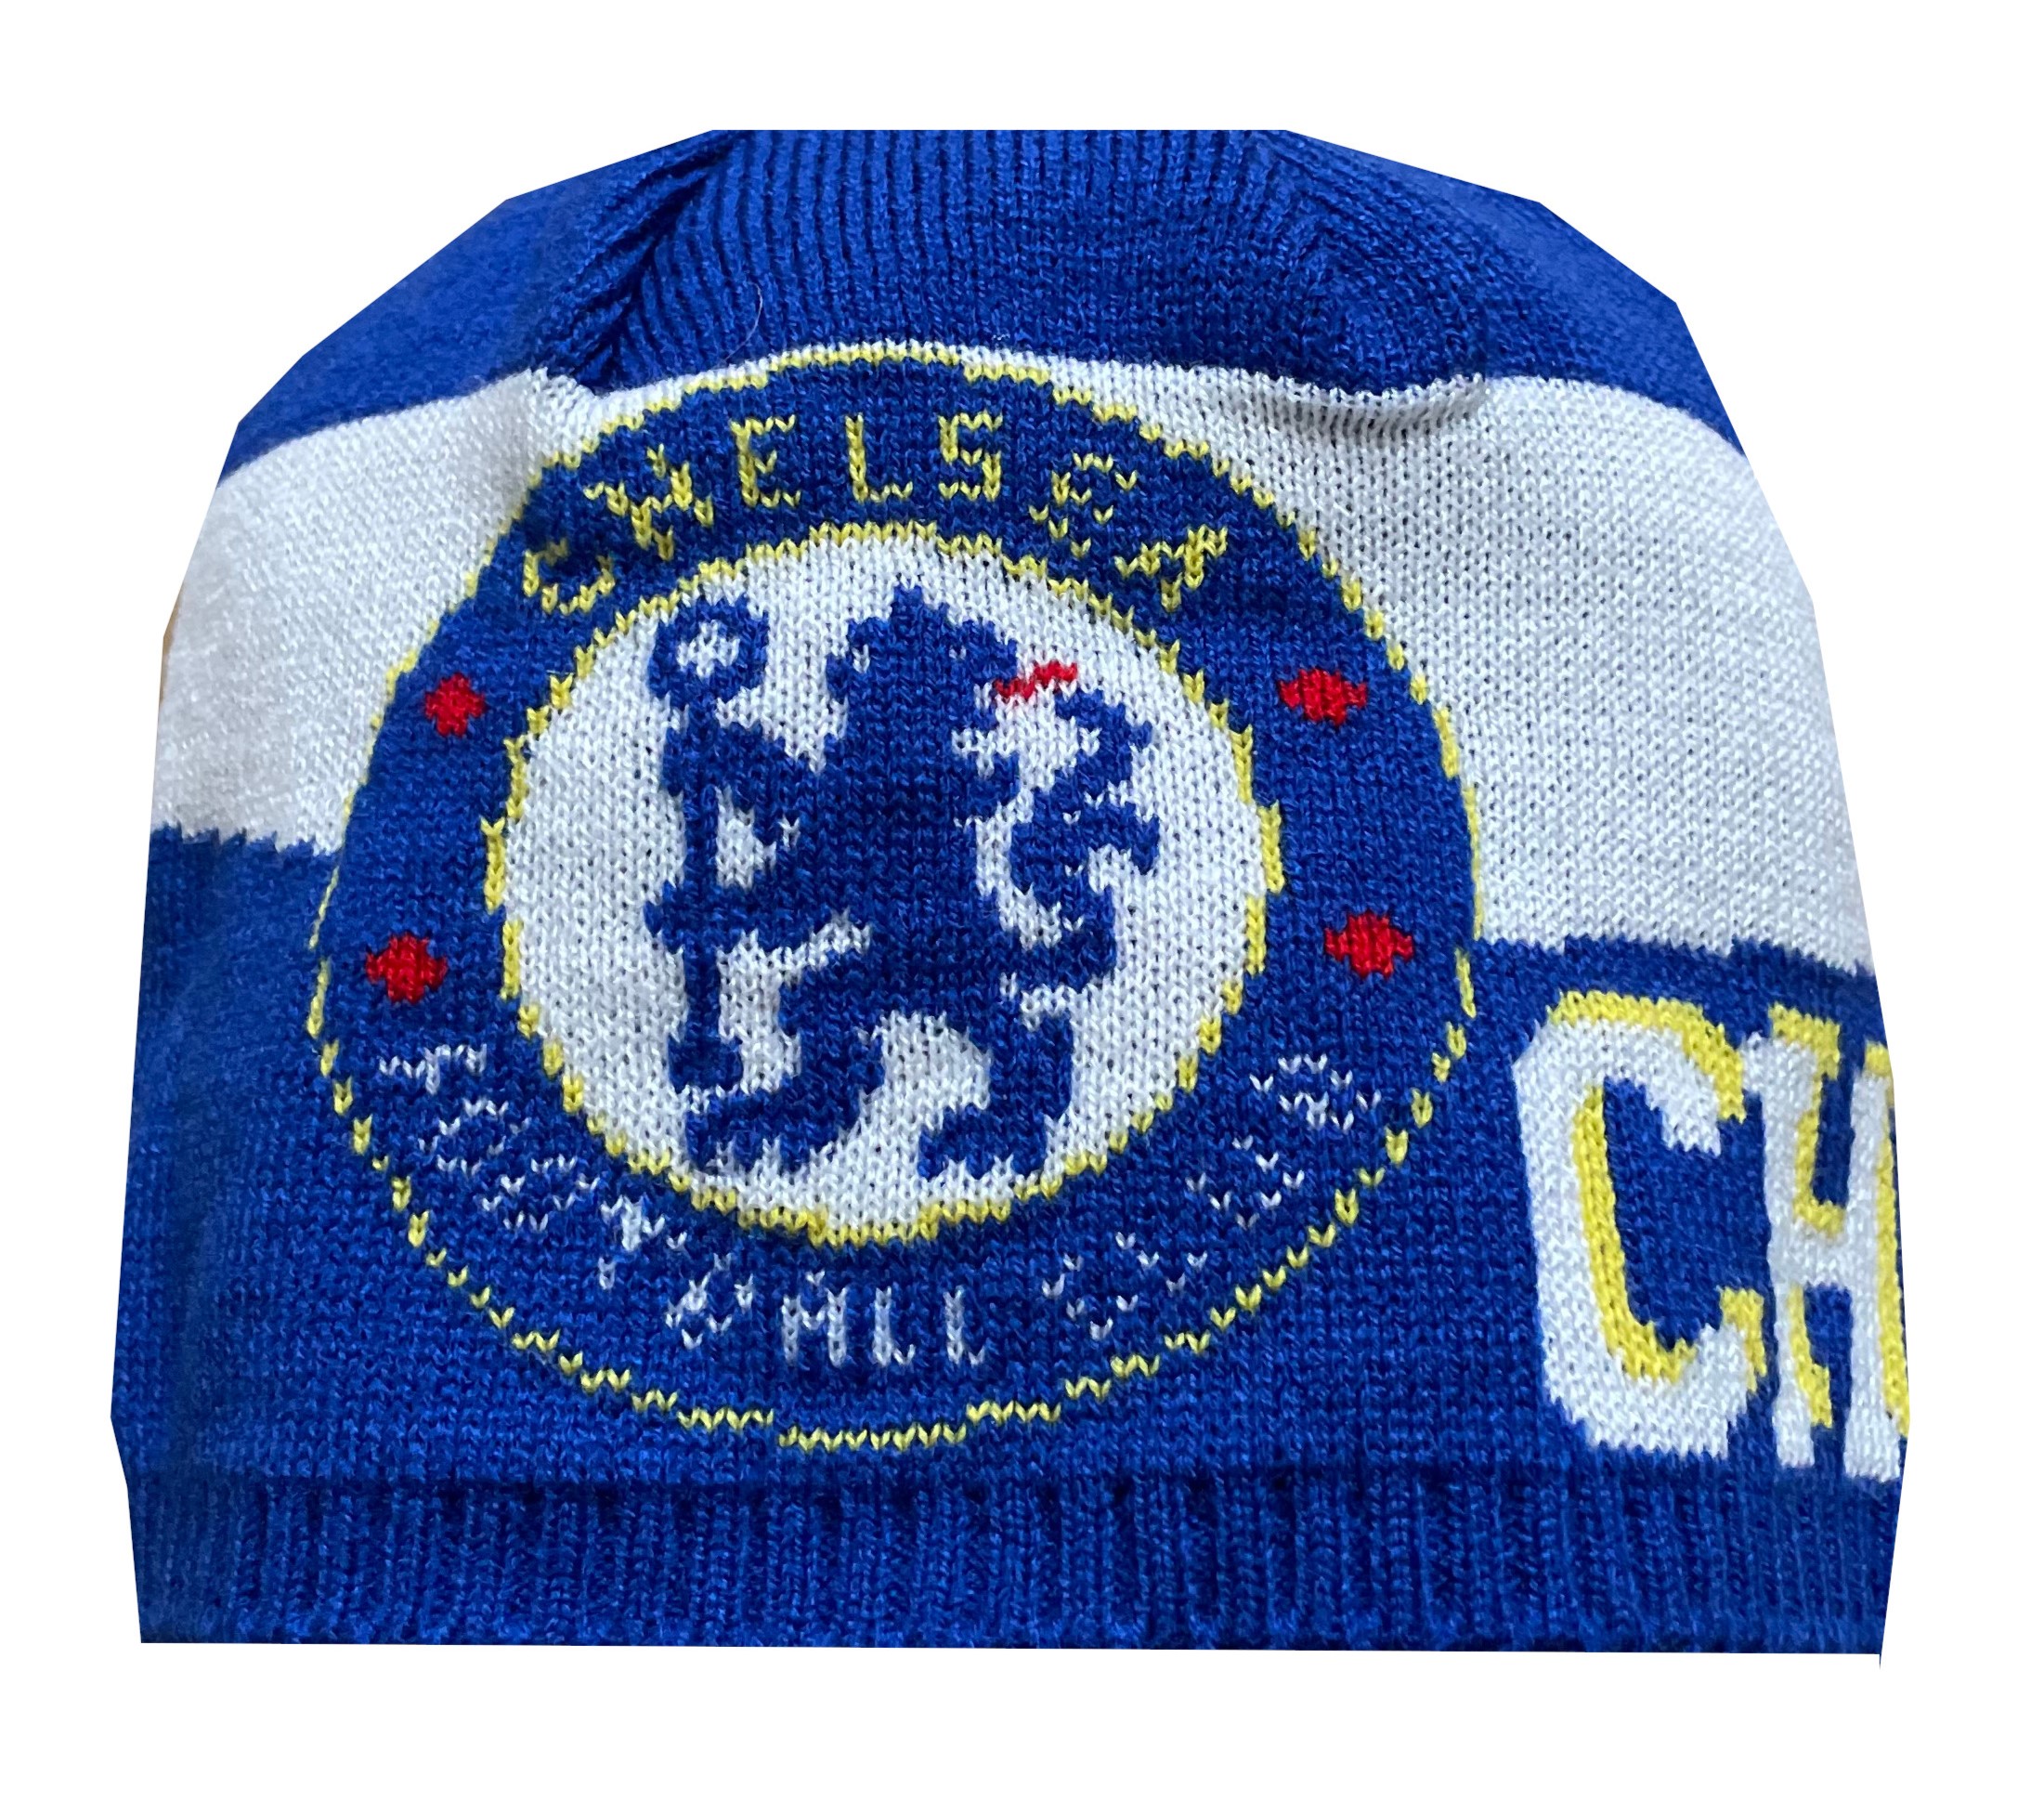 Pletená čepice Chelsea